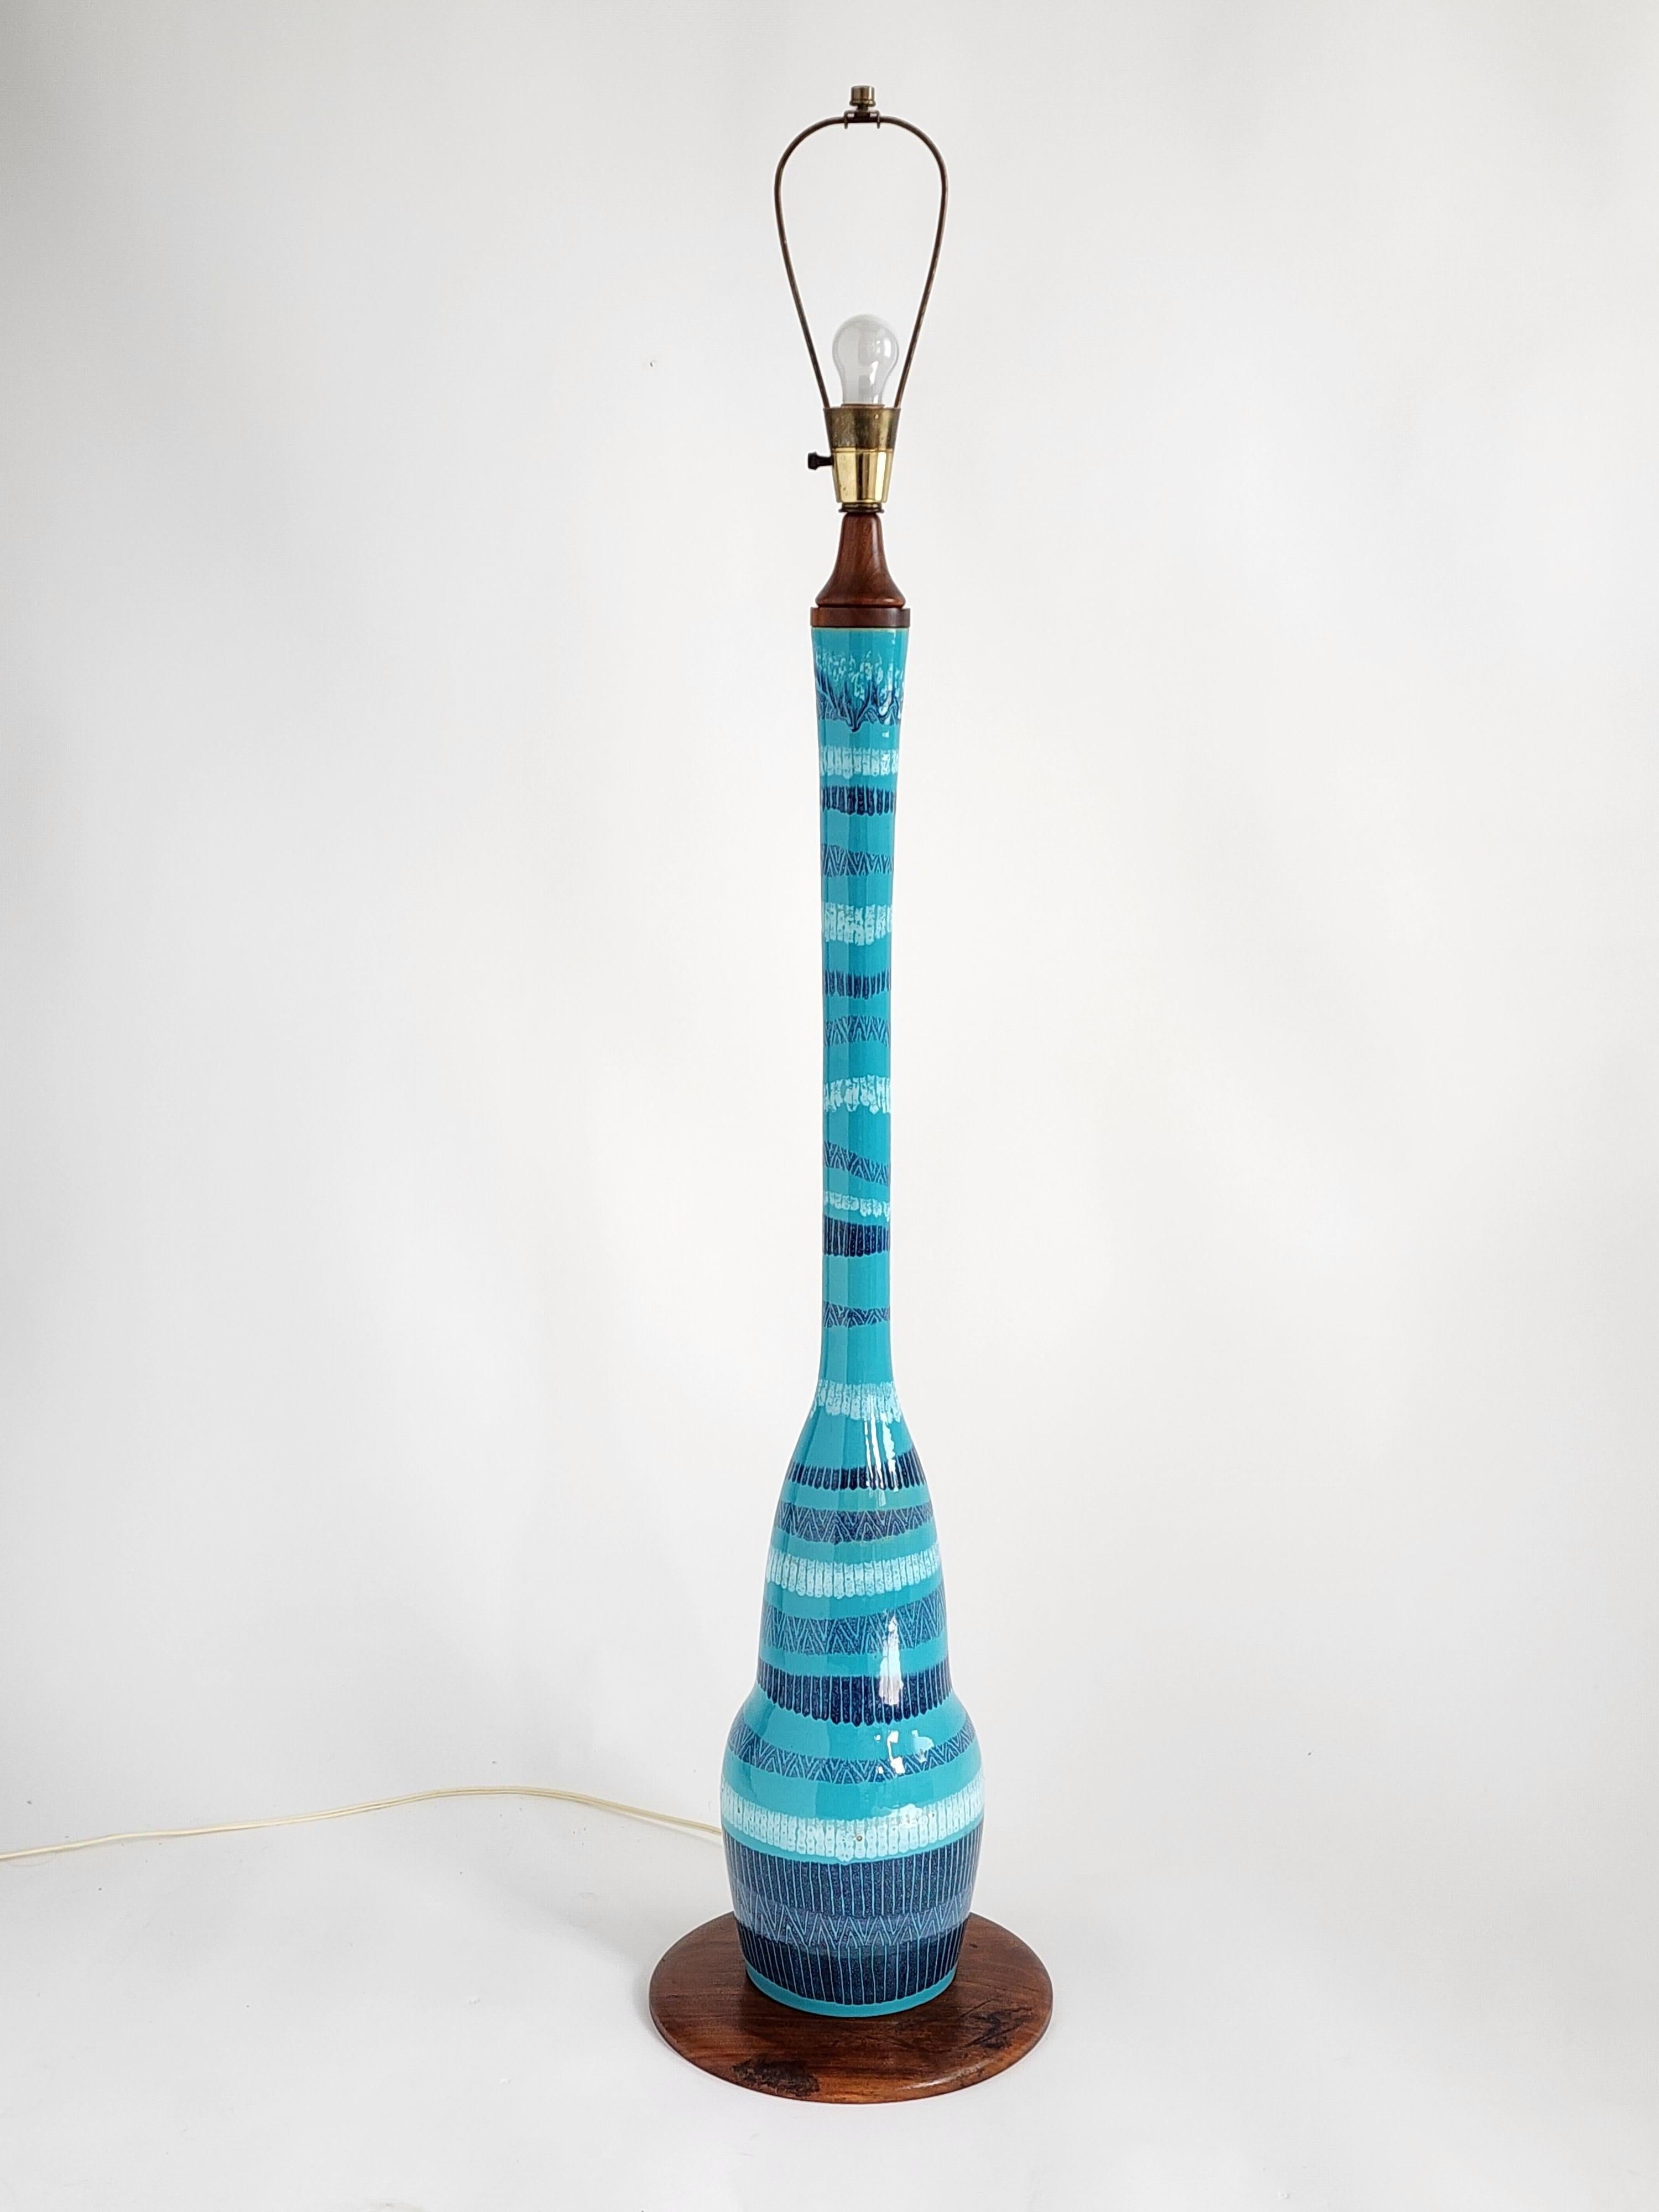 Große glasierte Keramik-Stehlampe in einer geschmackvollen Blauton-Variation sitzend  auf einem Sockel aus Nussbaumholz. 

Hochwertiges MATERIAL und Hardware. 

Lampe mesure 55 in. zu oben Bogen 47 in. zu Sockel . 

Der Sockel aus Walnussholz ist 12